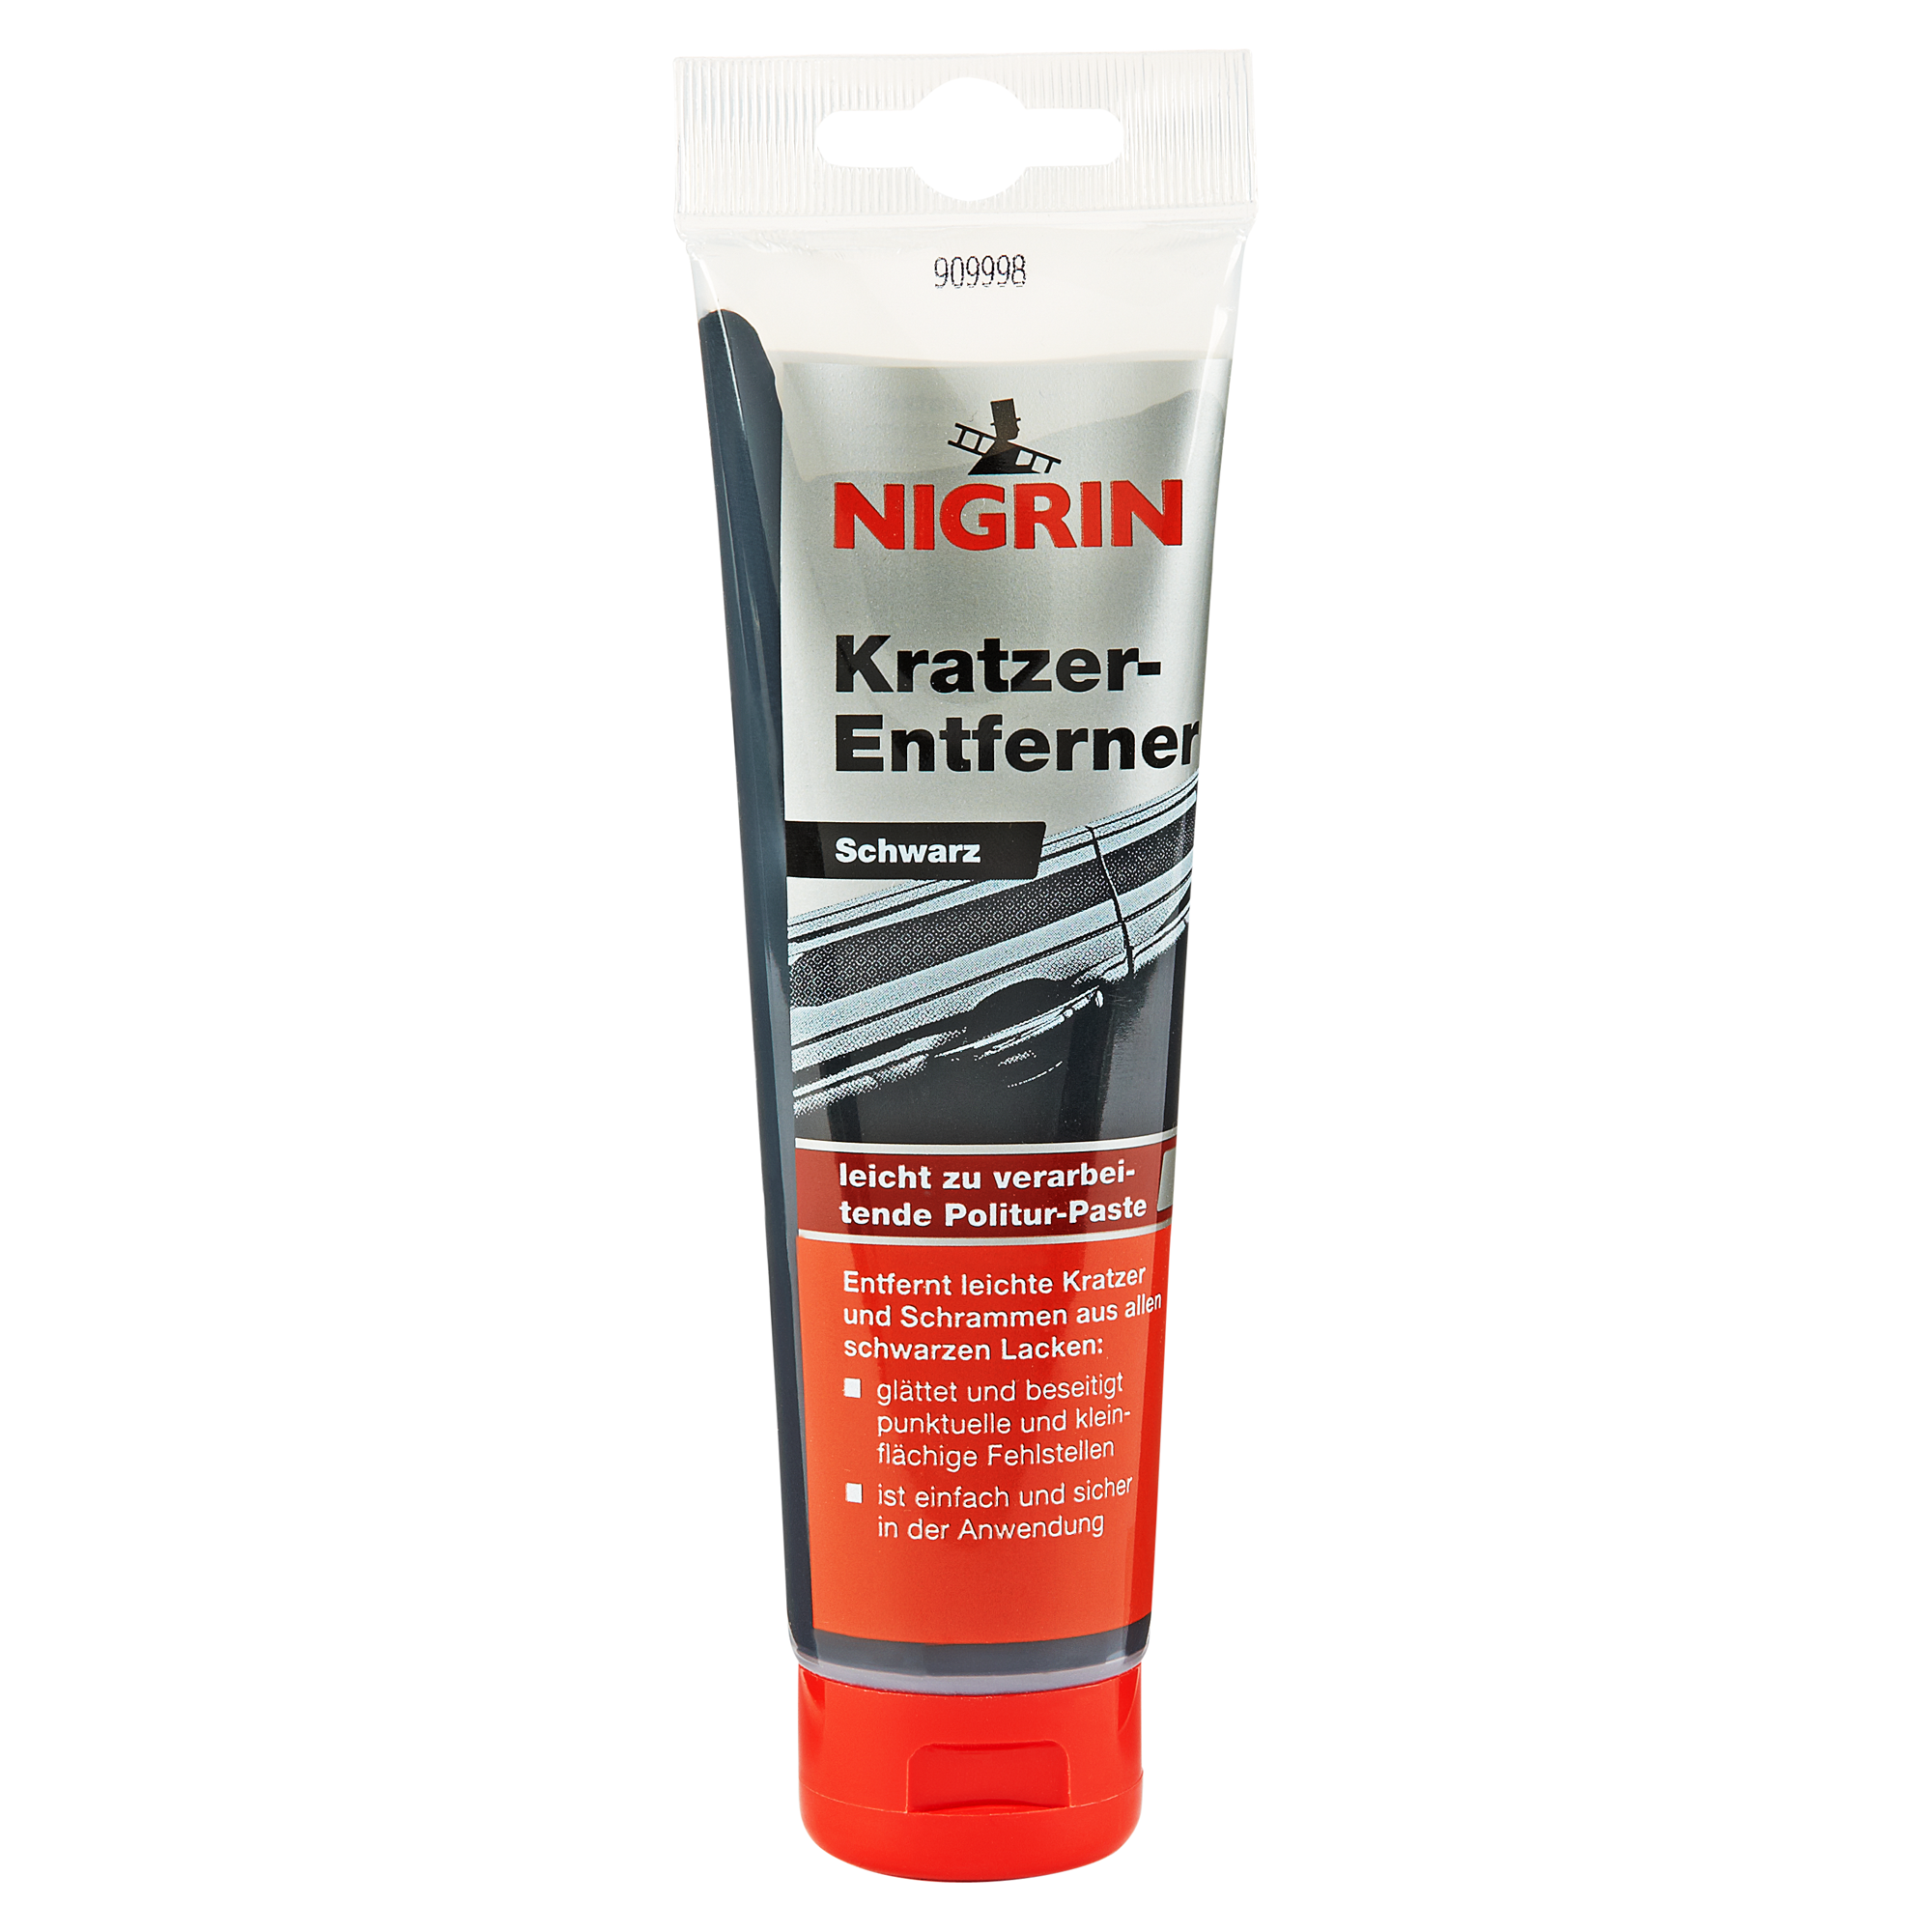 Kratzer-Entferner schwarz 150 g + product picture